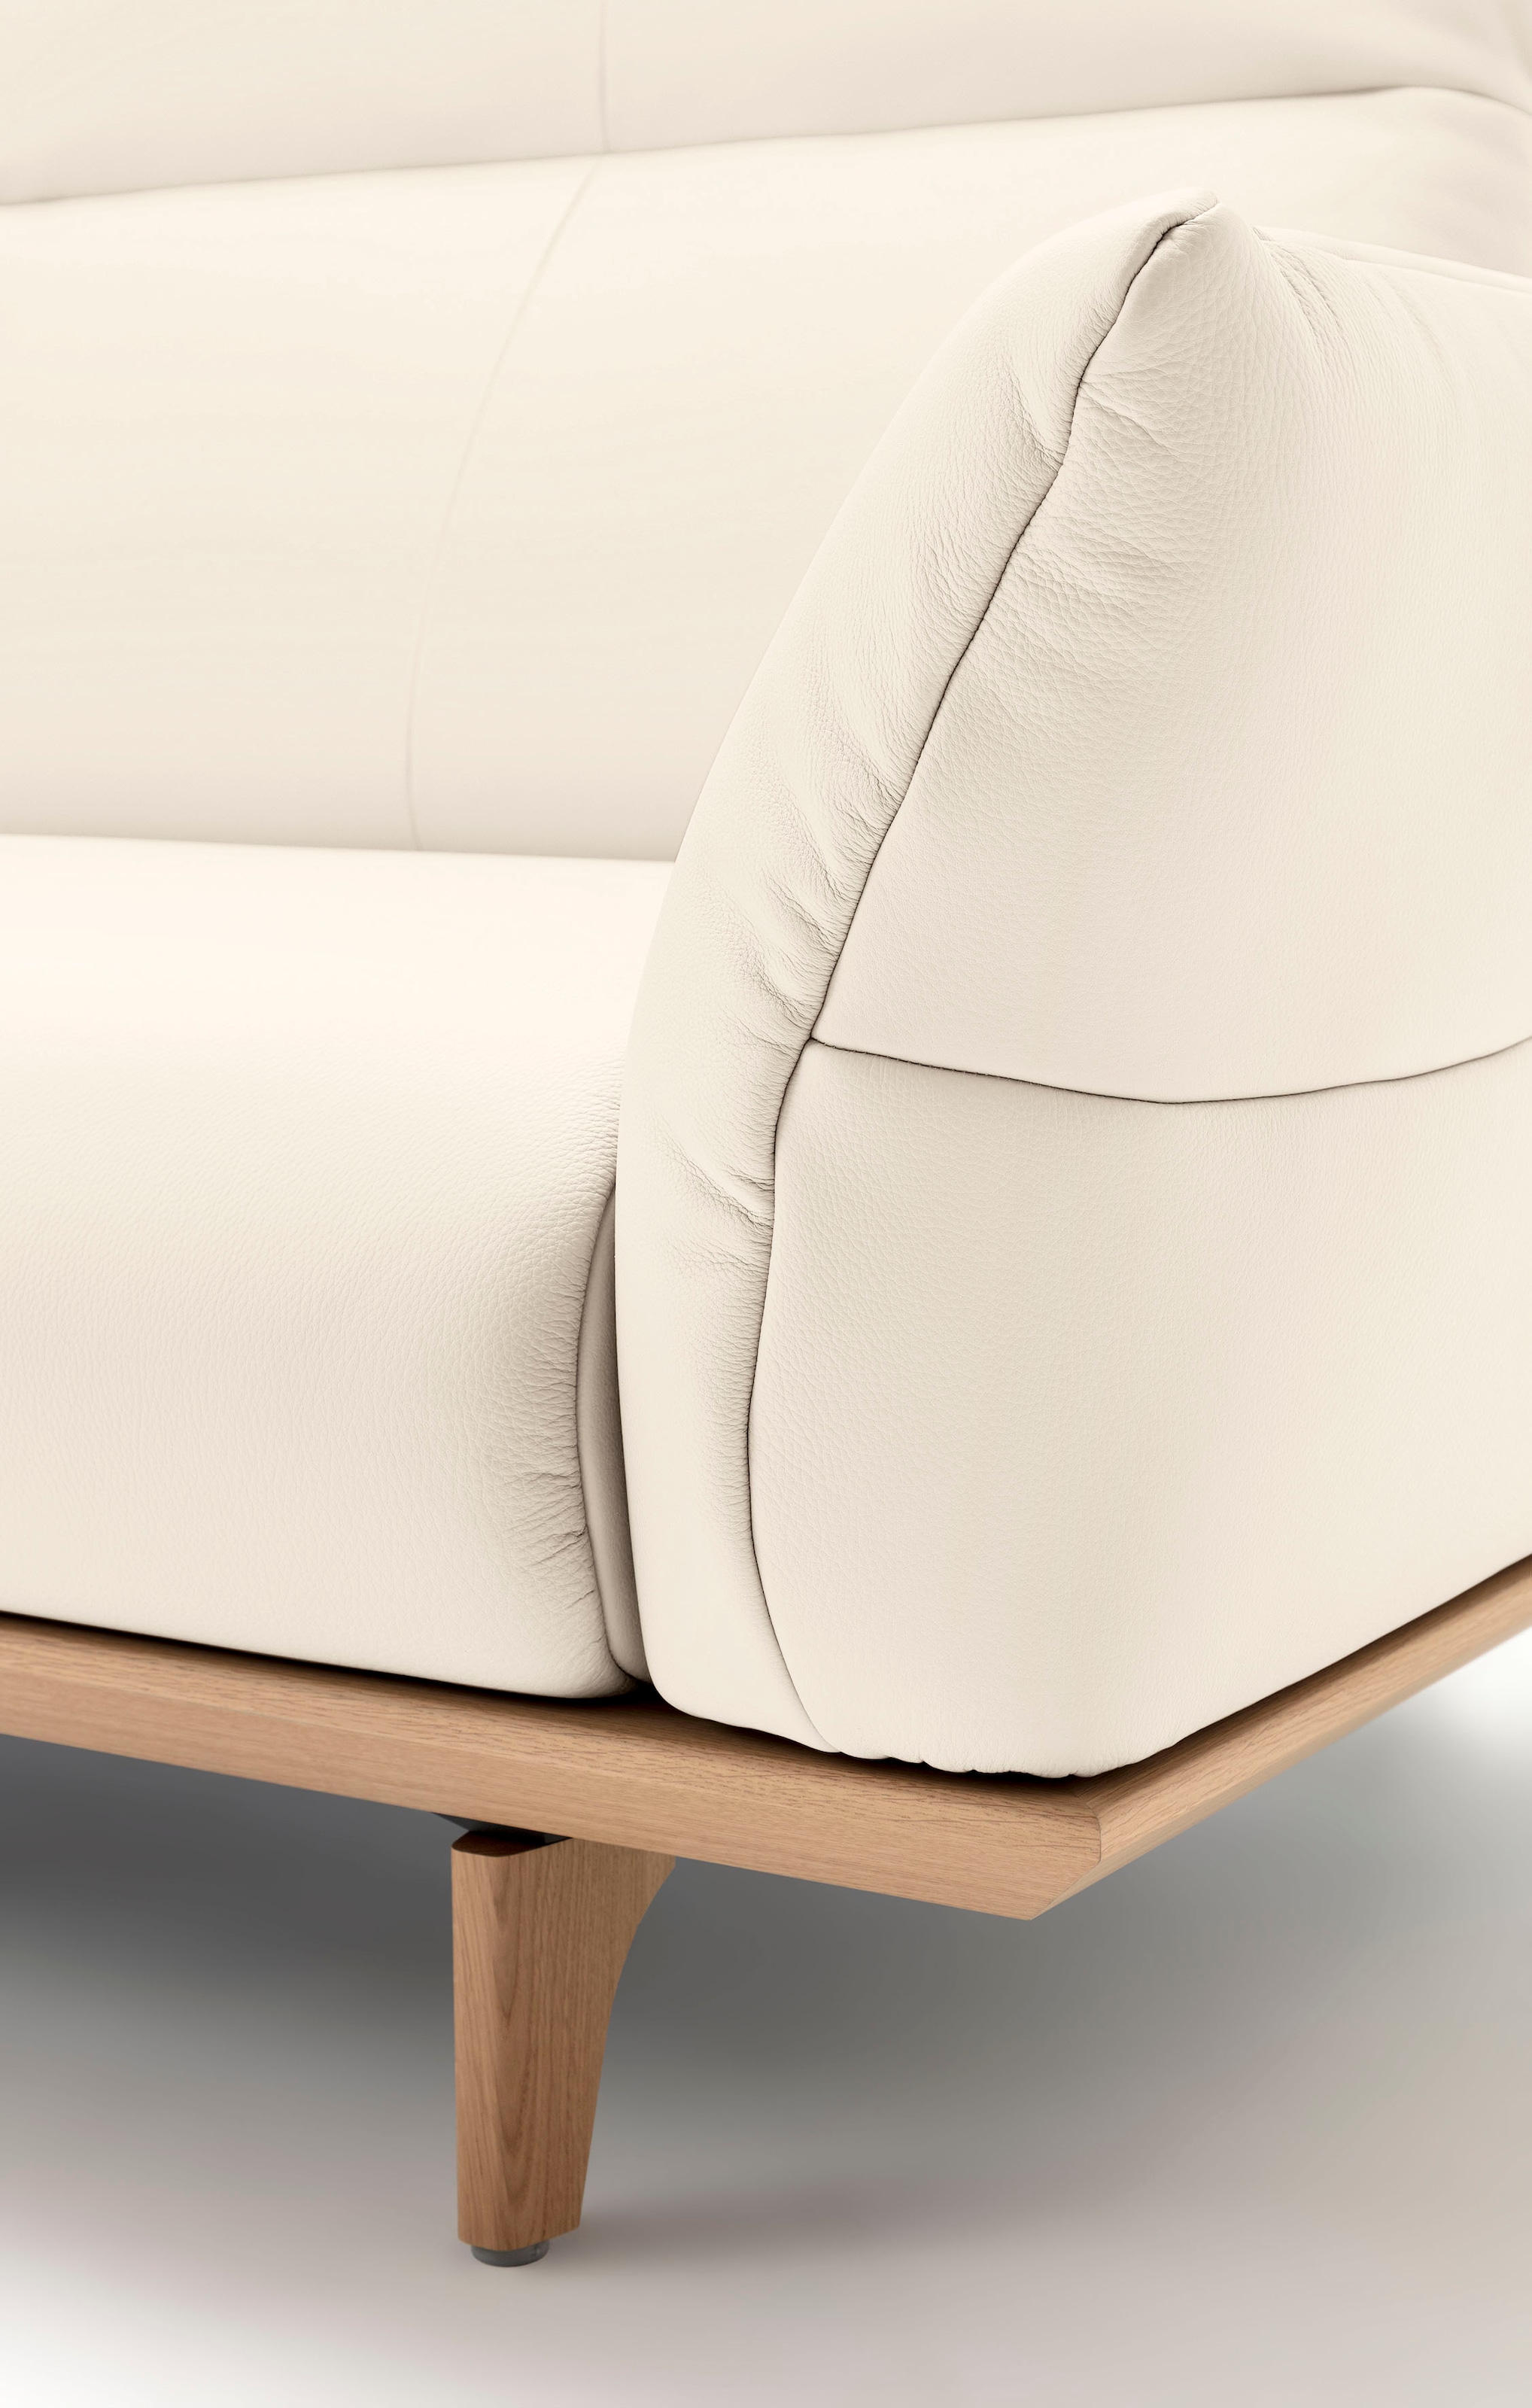 hülsta sofa 3,5-Sitzer »hs.460«, Sockel in Eiche, Füße Eiche natur, Breite 228 cm